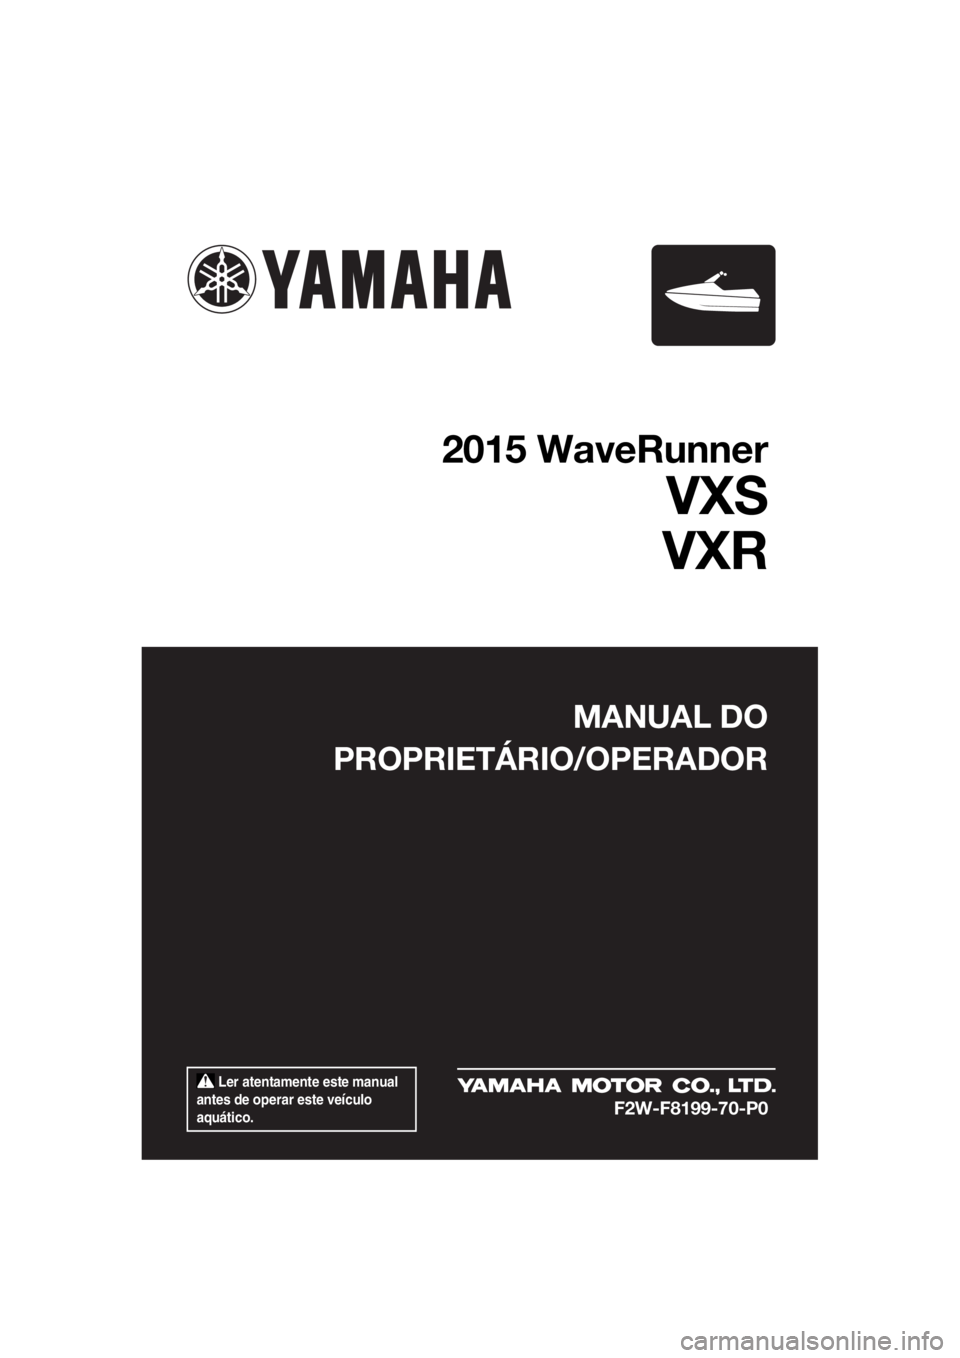 YAMAHA VXS 2015  Manual de utilização (in Portuguese)  Ler atentamente este manual 
antes de operar este veículo 
aquático.
MANUAL DO
PROPRIETÁRIO/OPERADOR
2015 WaveRunner
VXS
VXR
F2W-F8199-70-P0
UF2W70P0.book  Page 1  Tuesday, December 8, 2015  2:06 